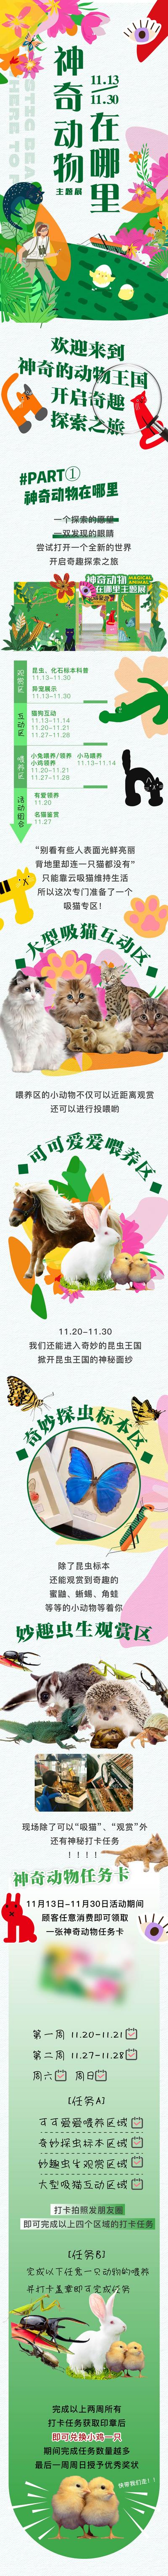 南门网 海报 长图 房地产 商业 宠物 气球 国潮 K歌